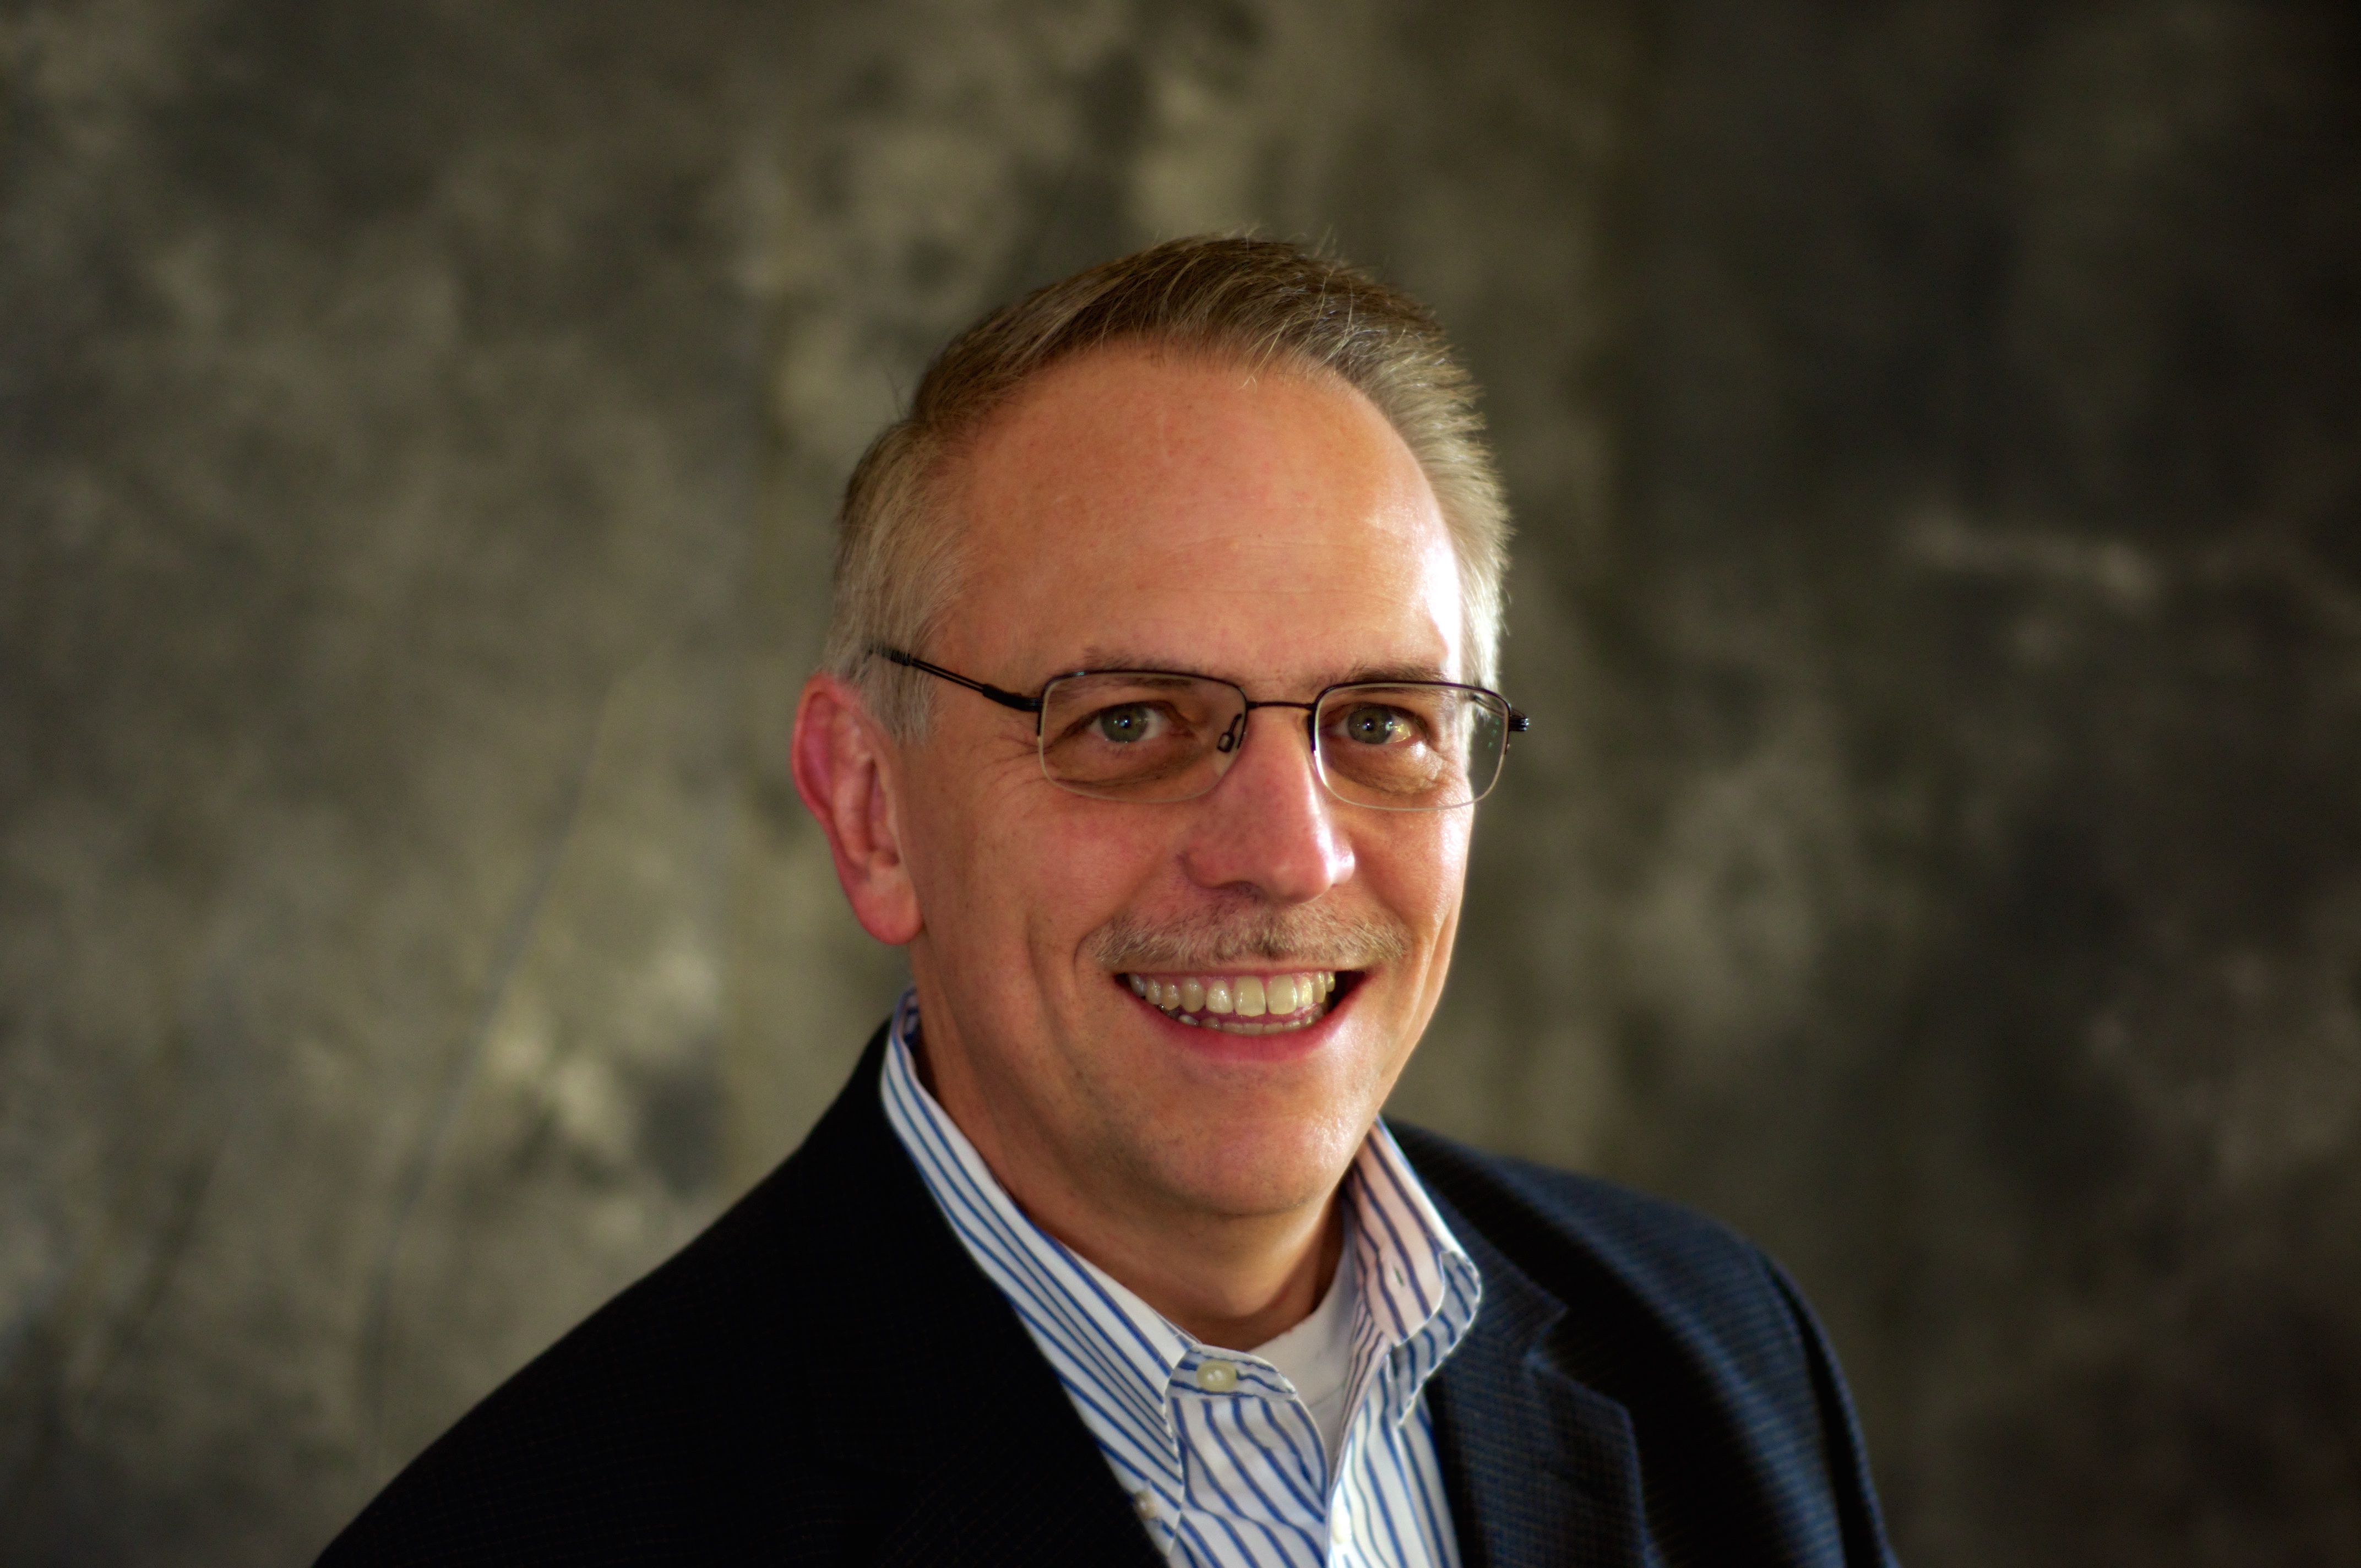 Robert Zielinski, CDO Technologies' commercial marketing director